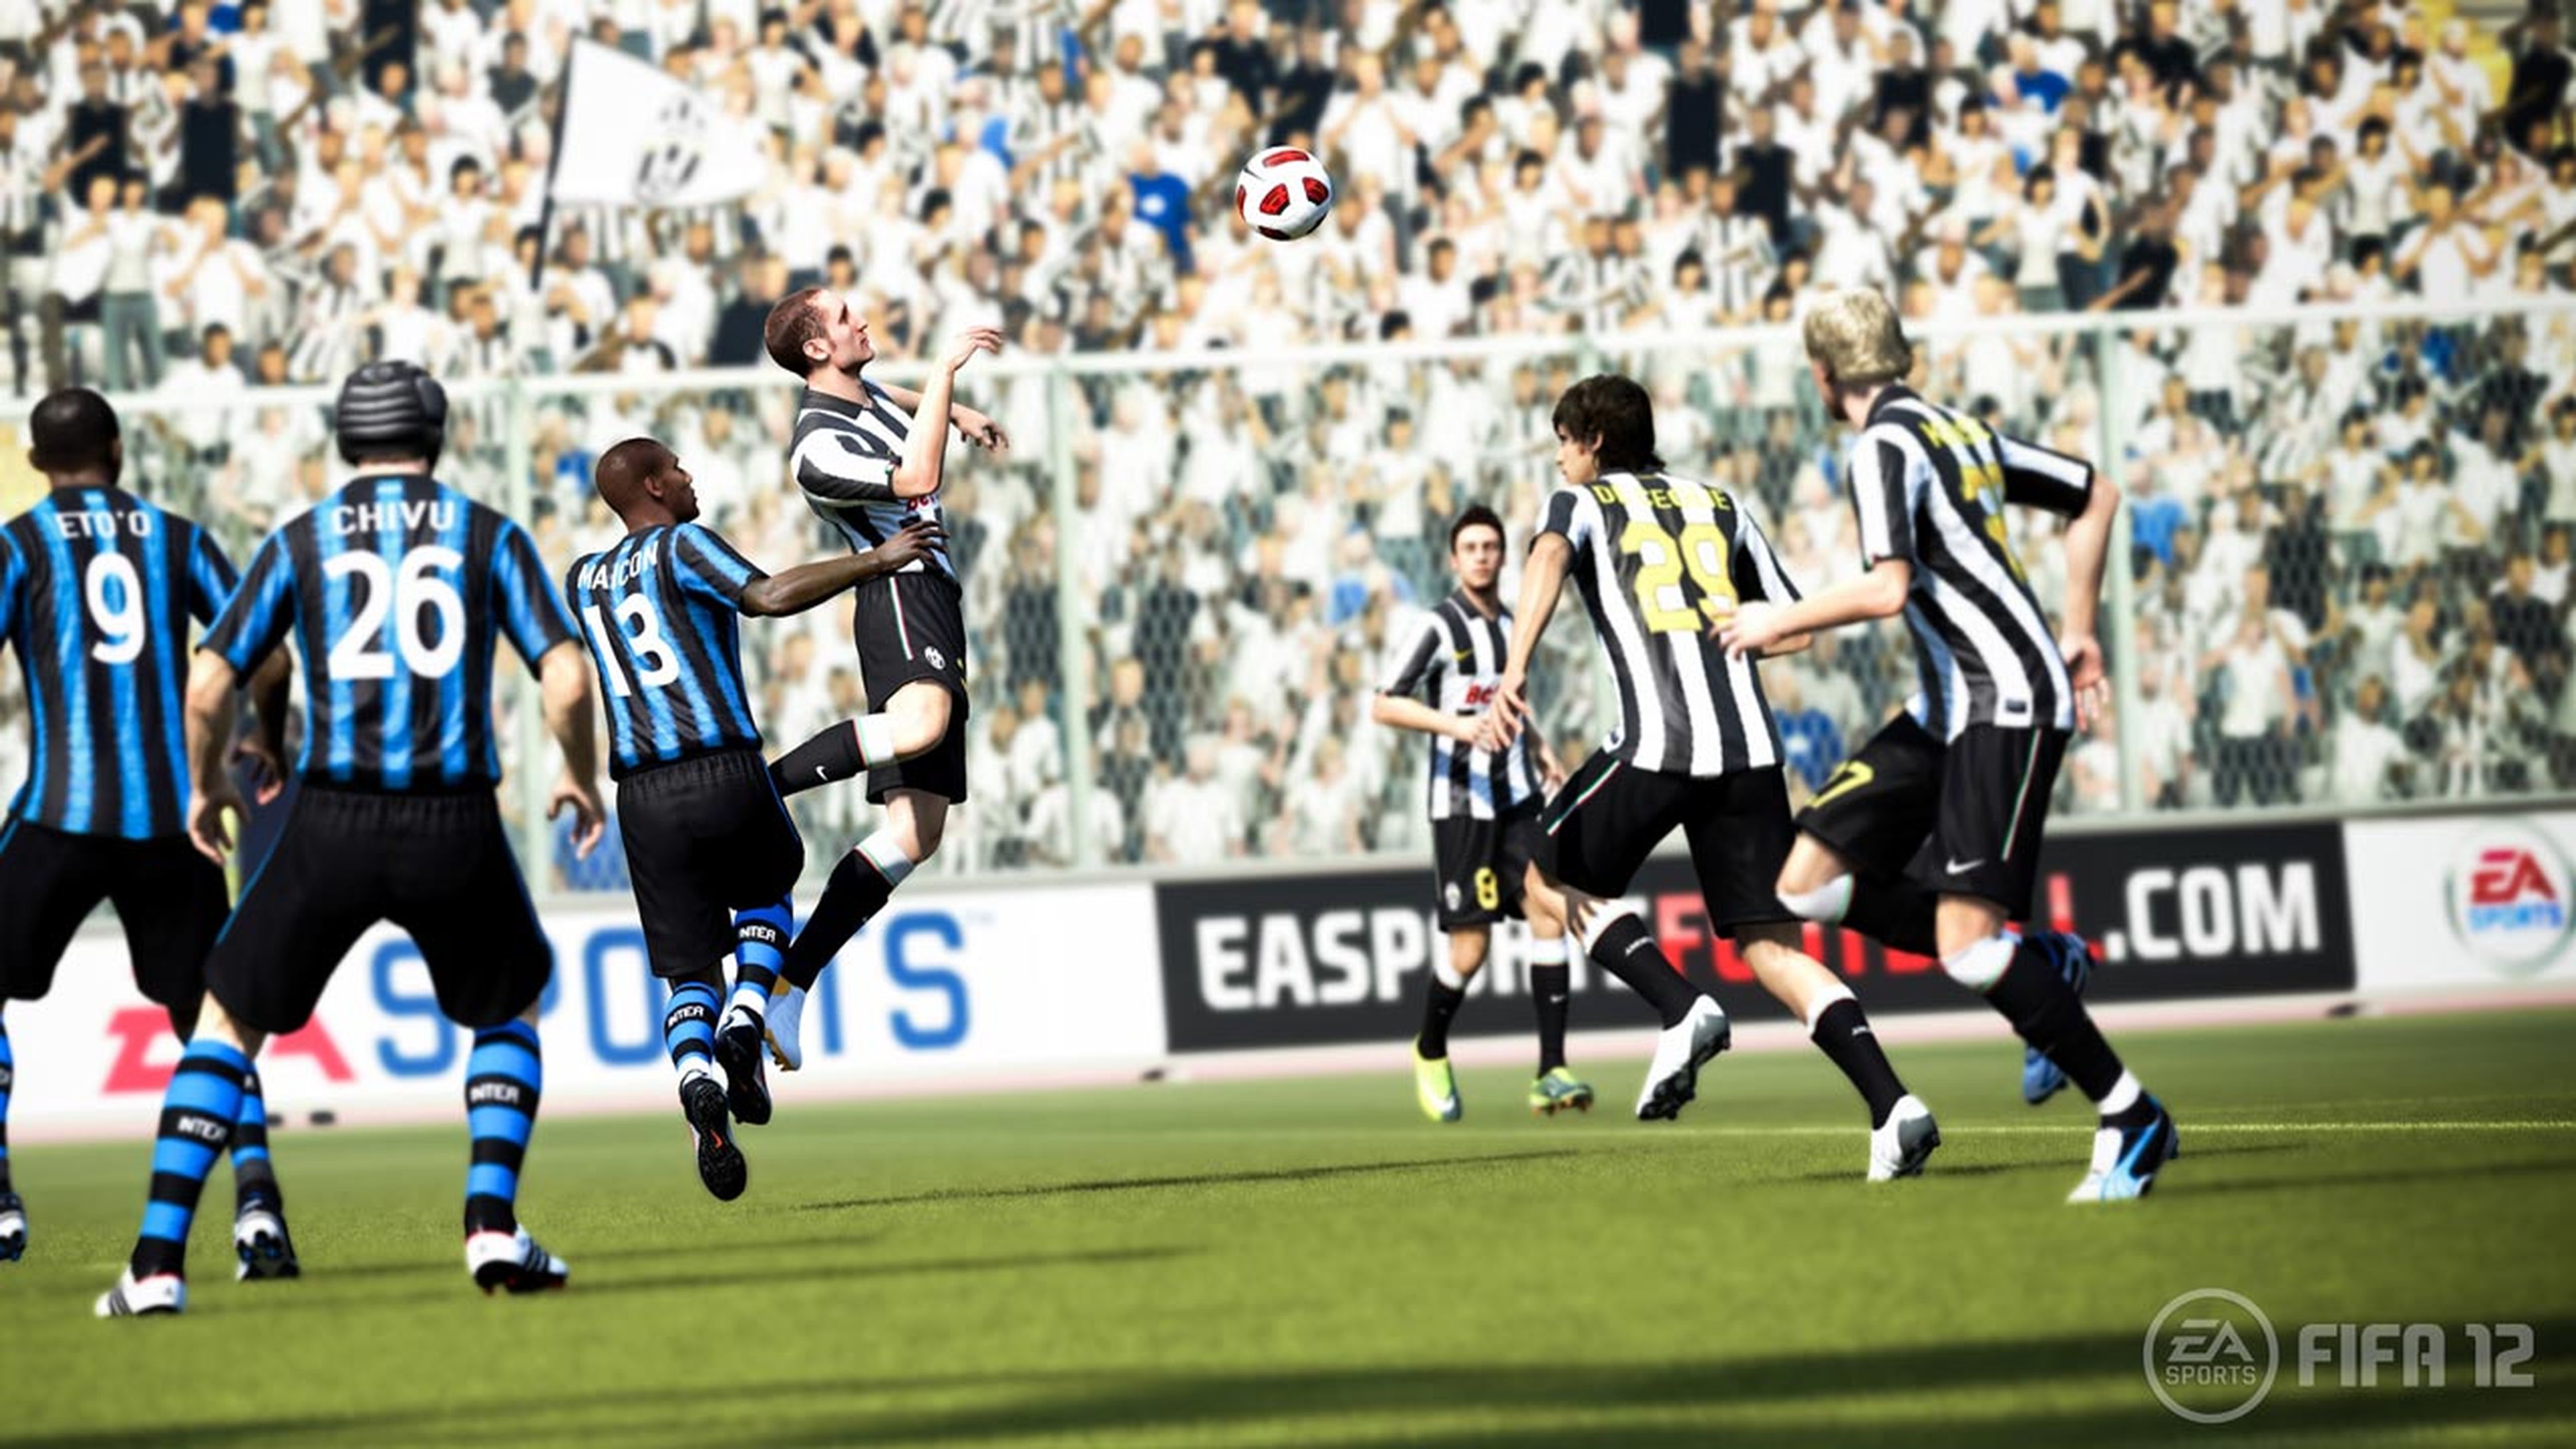 FIFA 12 promete todo lo que pedía la afición